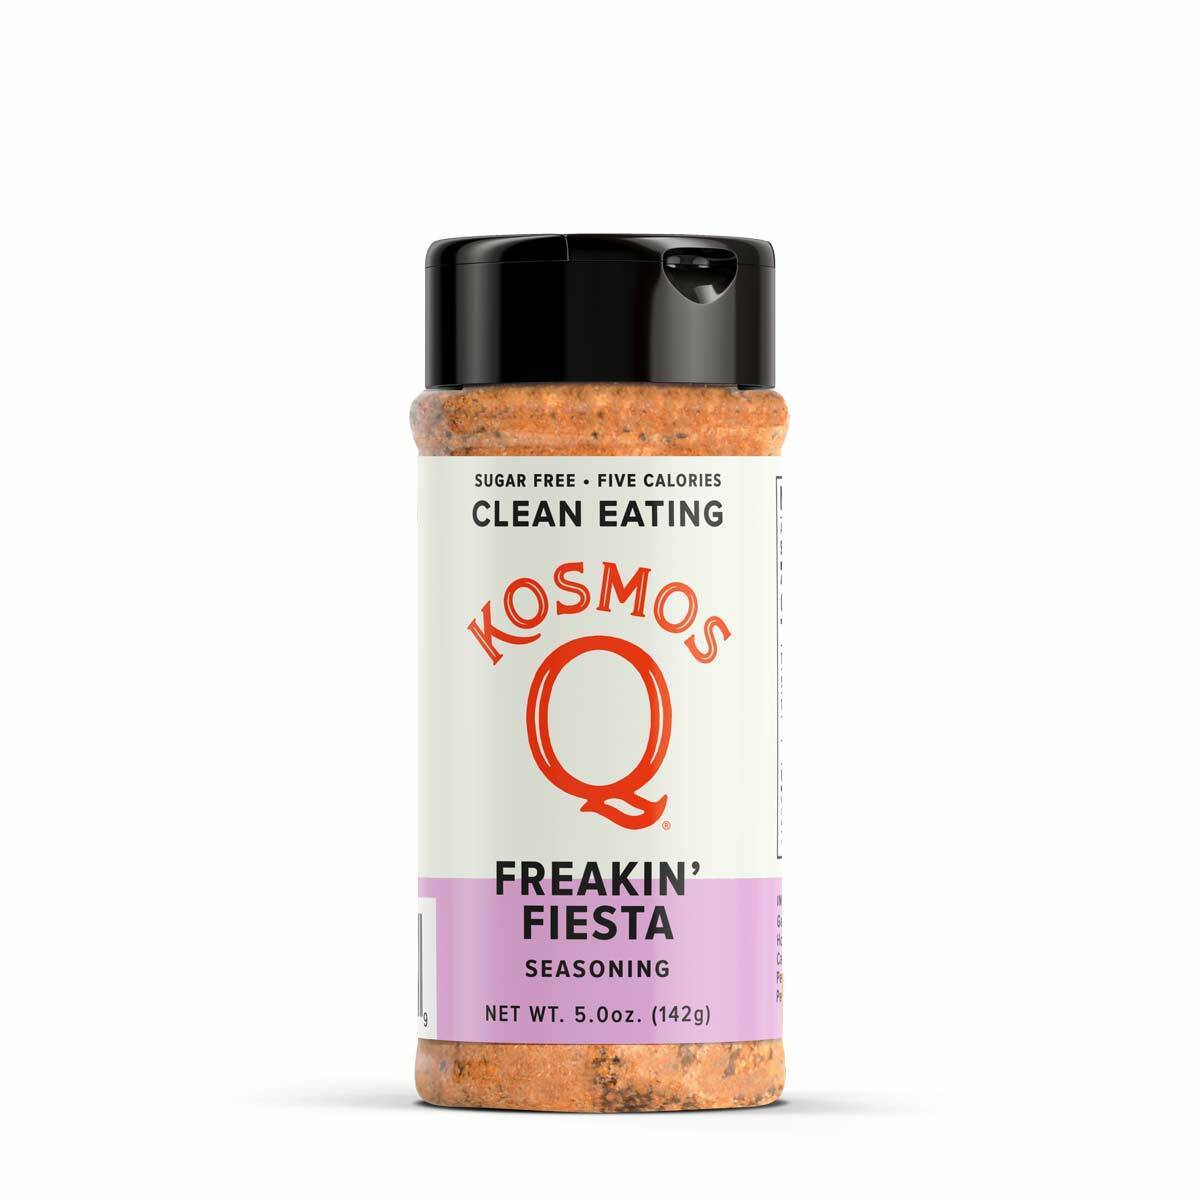 Kosmo's Q Clean Eating Seasonings Freakin' Fiesta - Paleo & Keto Clean Eating Seasoning